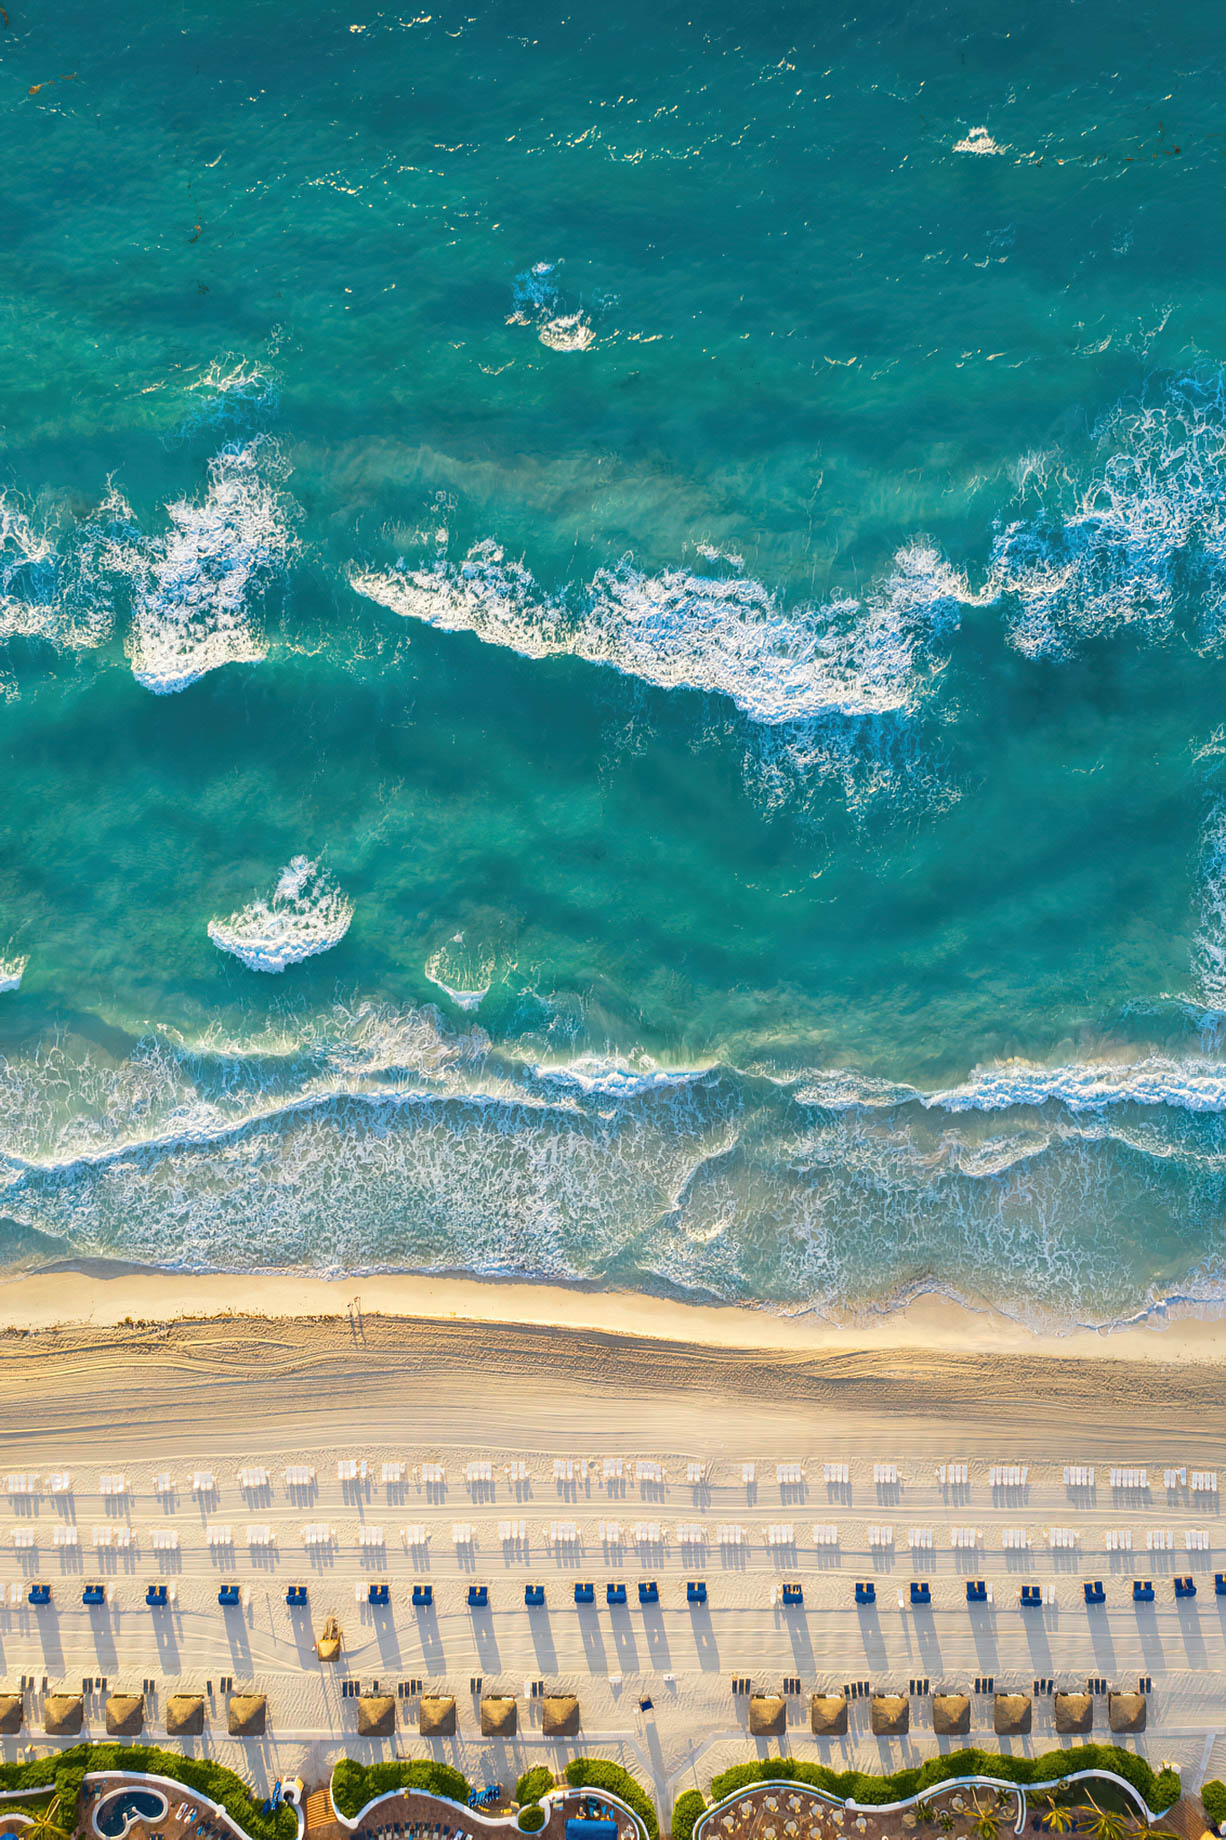 The Ritz-Carlton, Cancun Resort - Cancun, Mexico - Overhead Aerial Beach View